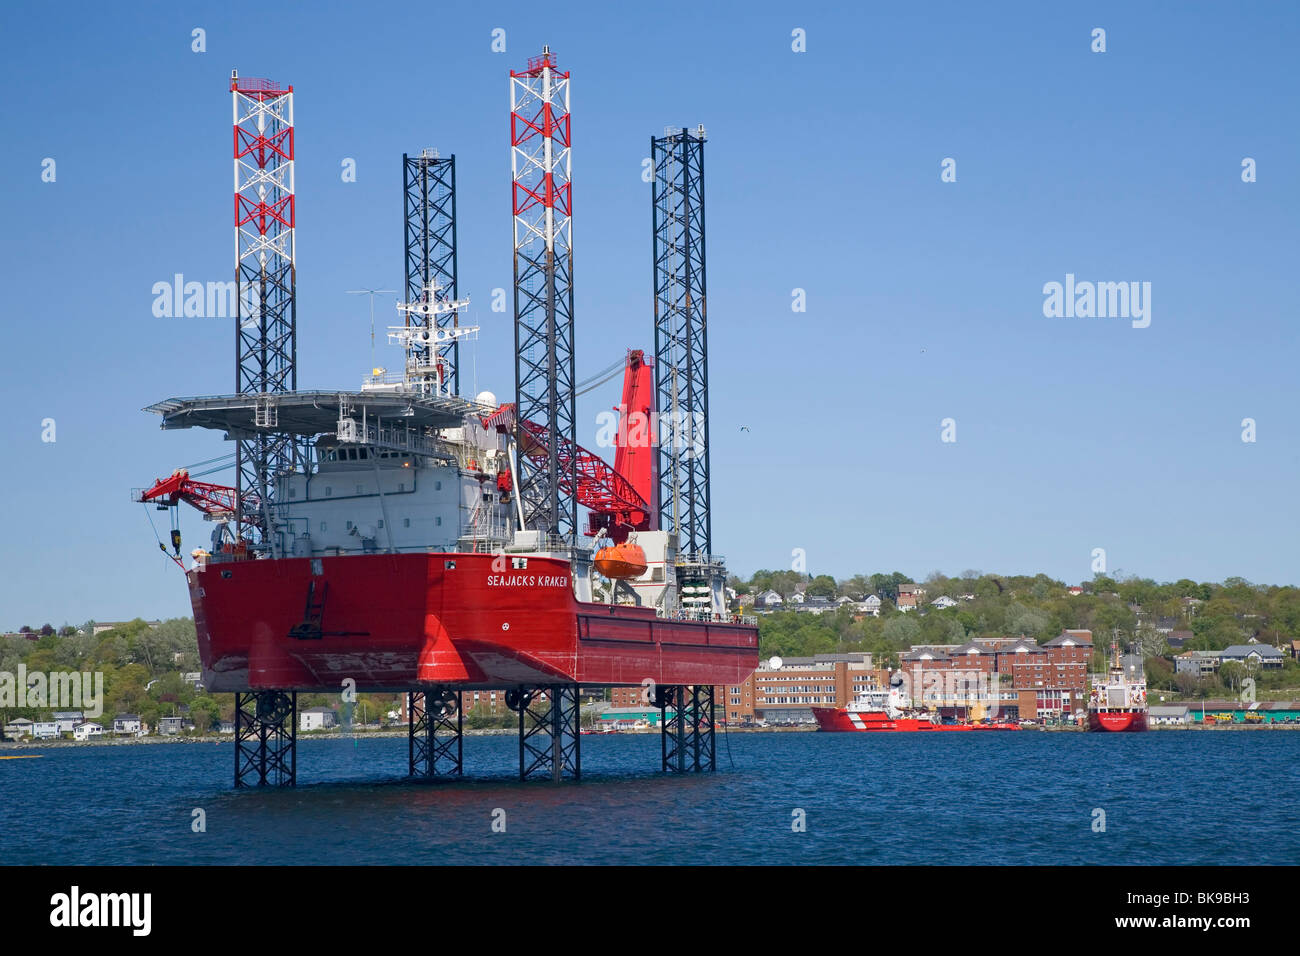 Dans le port de Halifax (Nouvelle-Écosse) est une plate-forme d'hébergement offshore bateau, le Kraken Seajacks avant de partir à l'étranger Banque D'Images